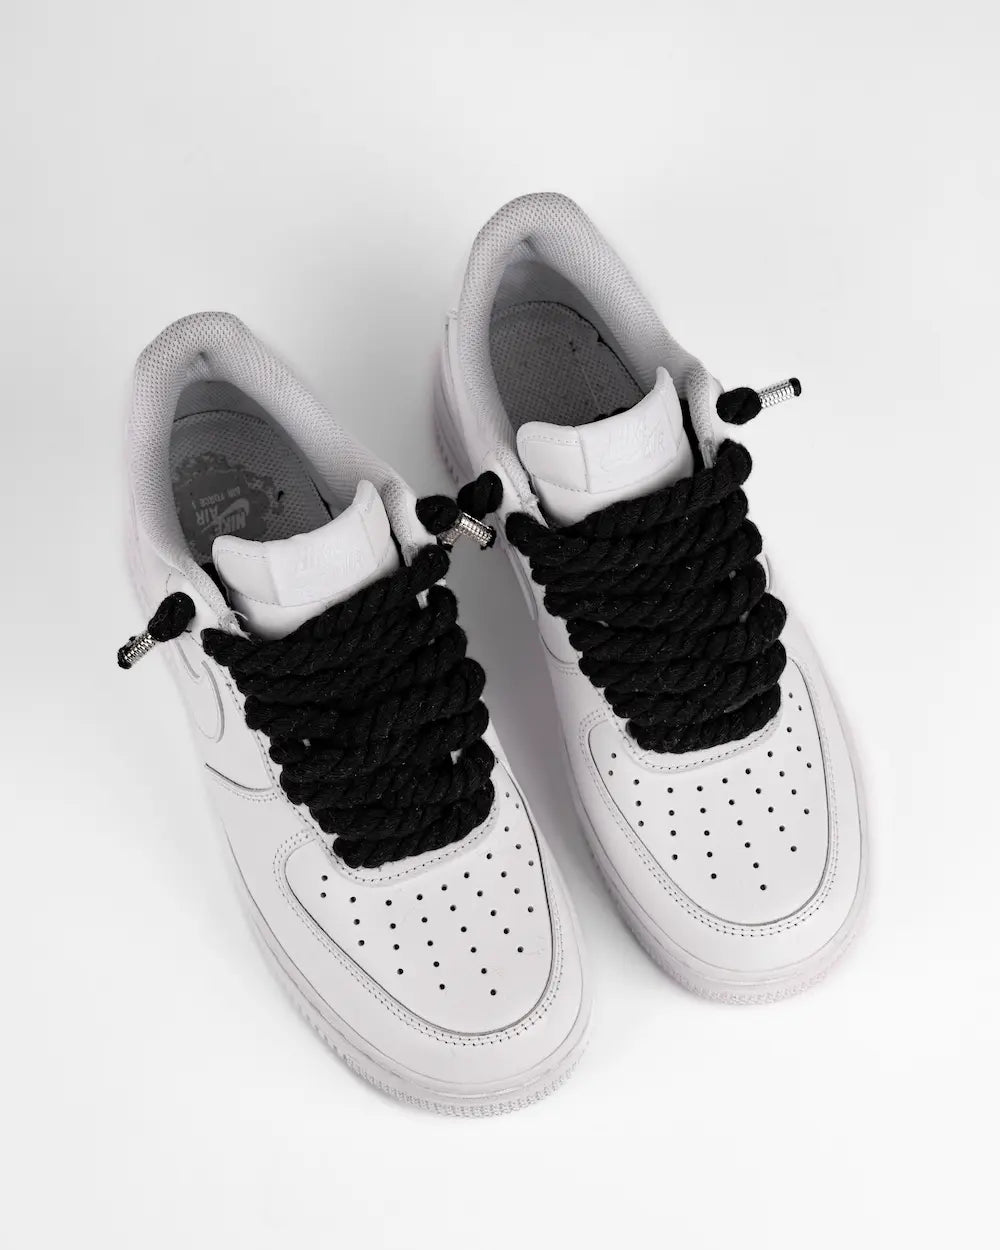 Nike Air Force 1 bianca personalizzata da SEDDYS con lacci in corda neri